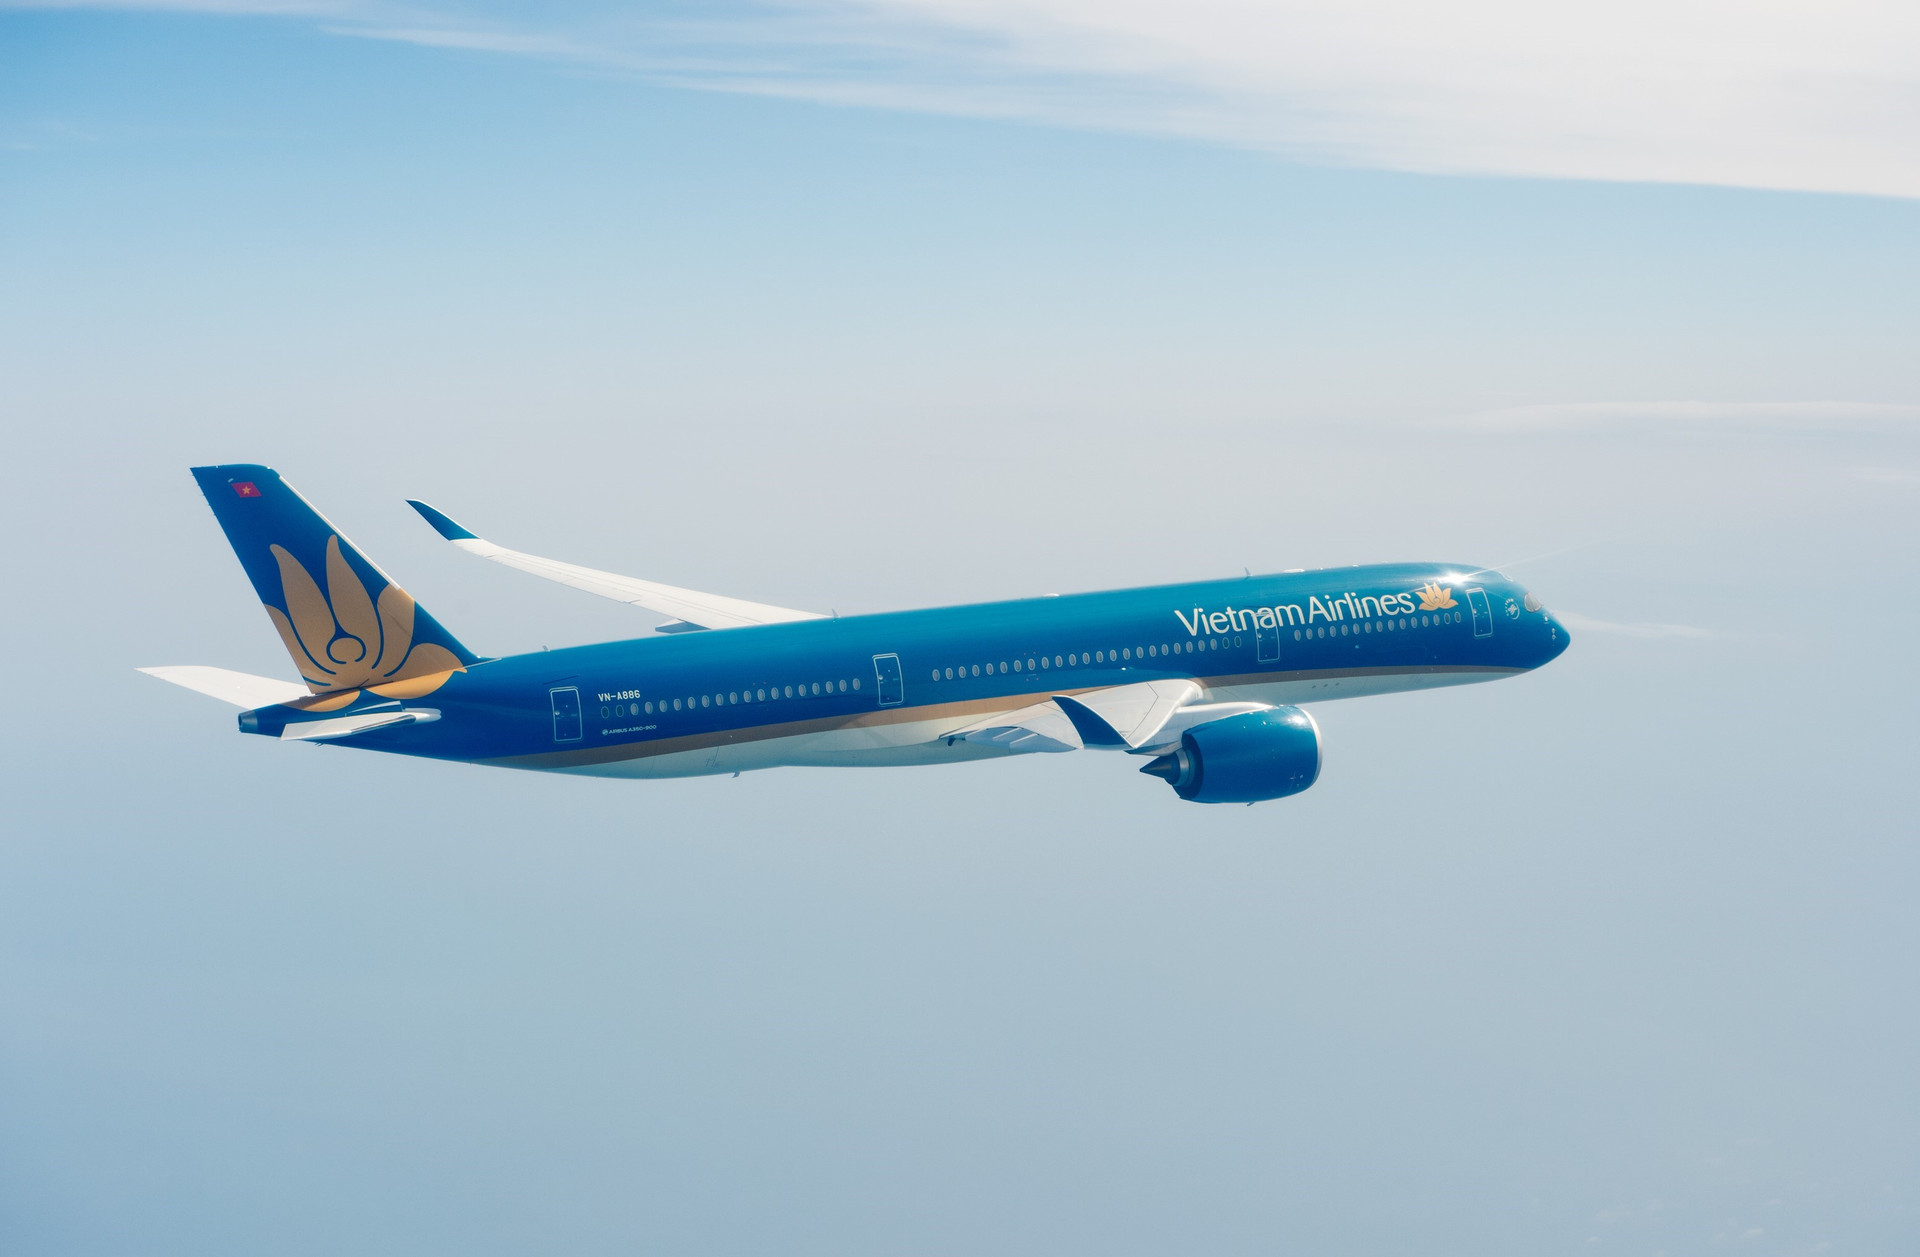 Vietnam Airlines sắp tặng một chuyến bay khứ hồi miễn phí cho người lao động ở miền Nam trở về thăm quê ở miền Bắc trong dịp Tết nguyên đán